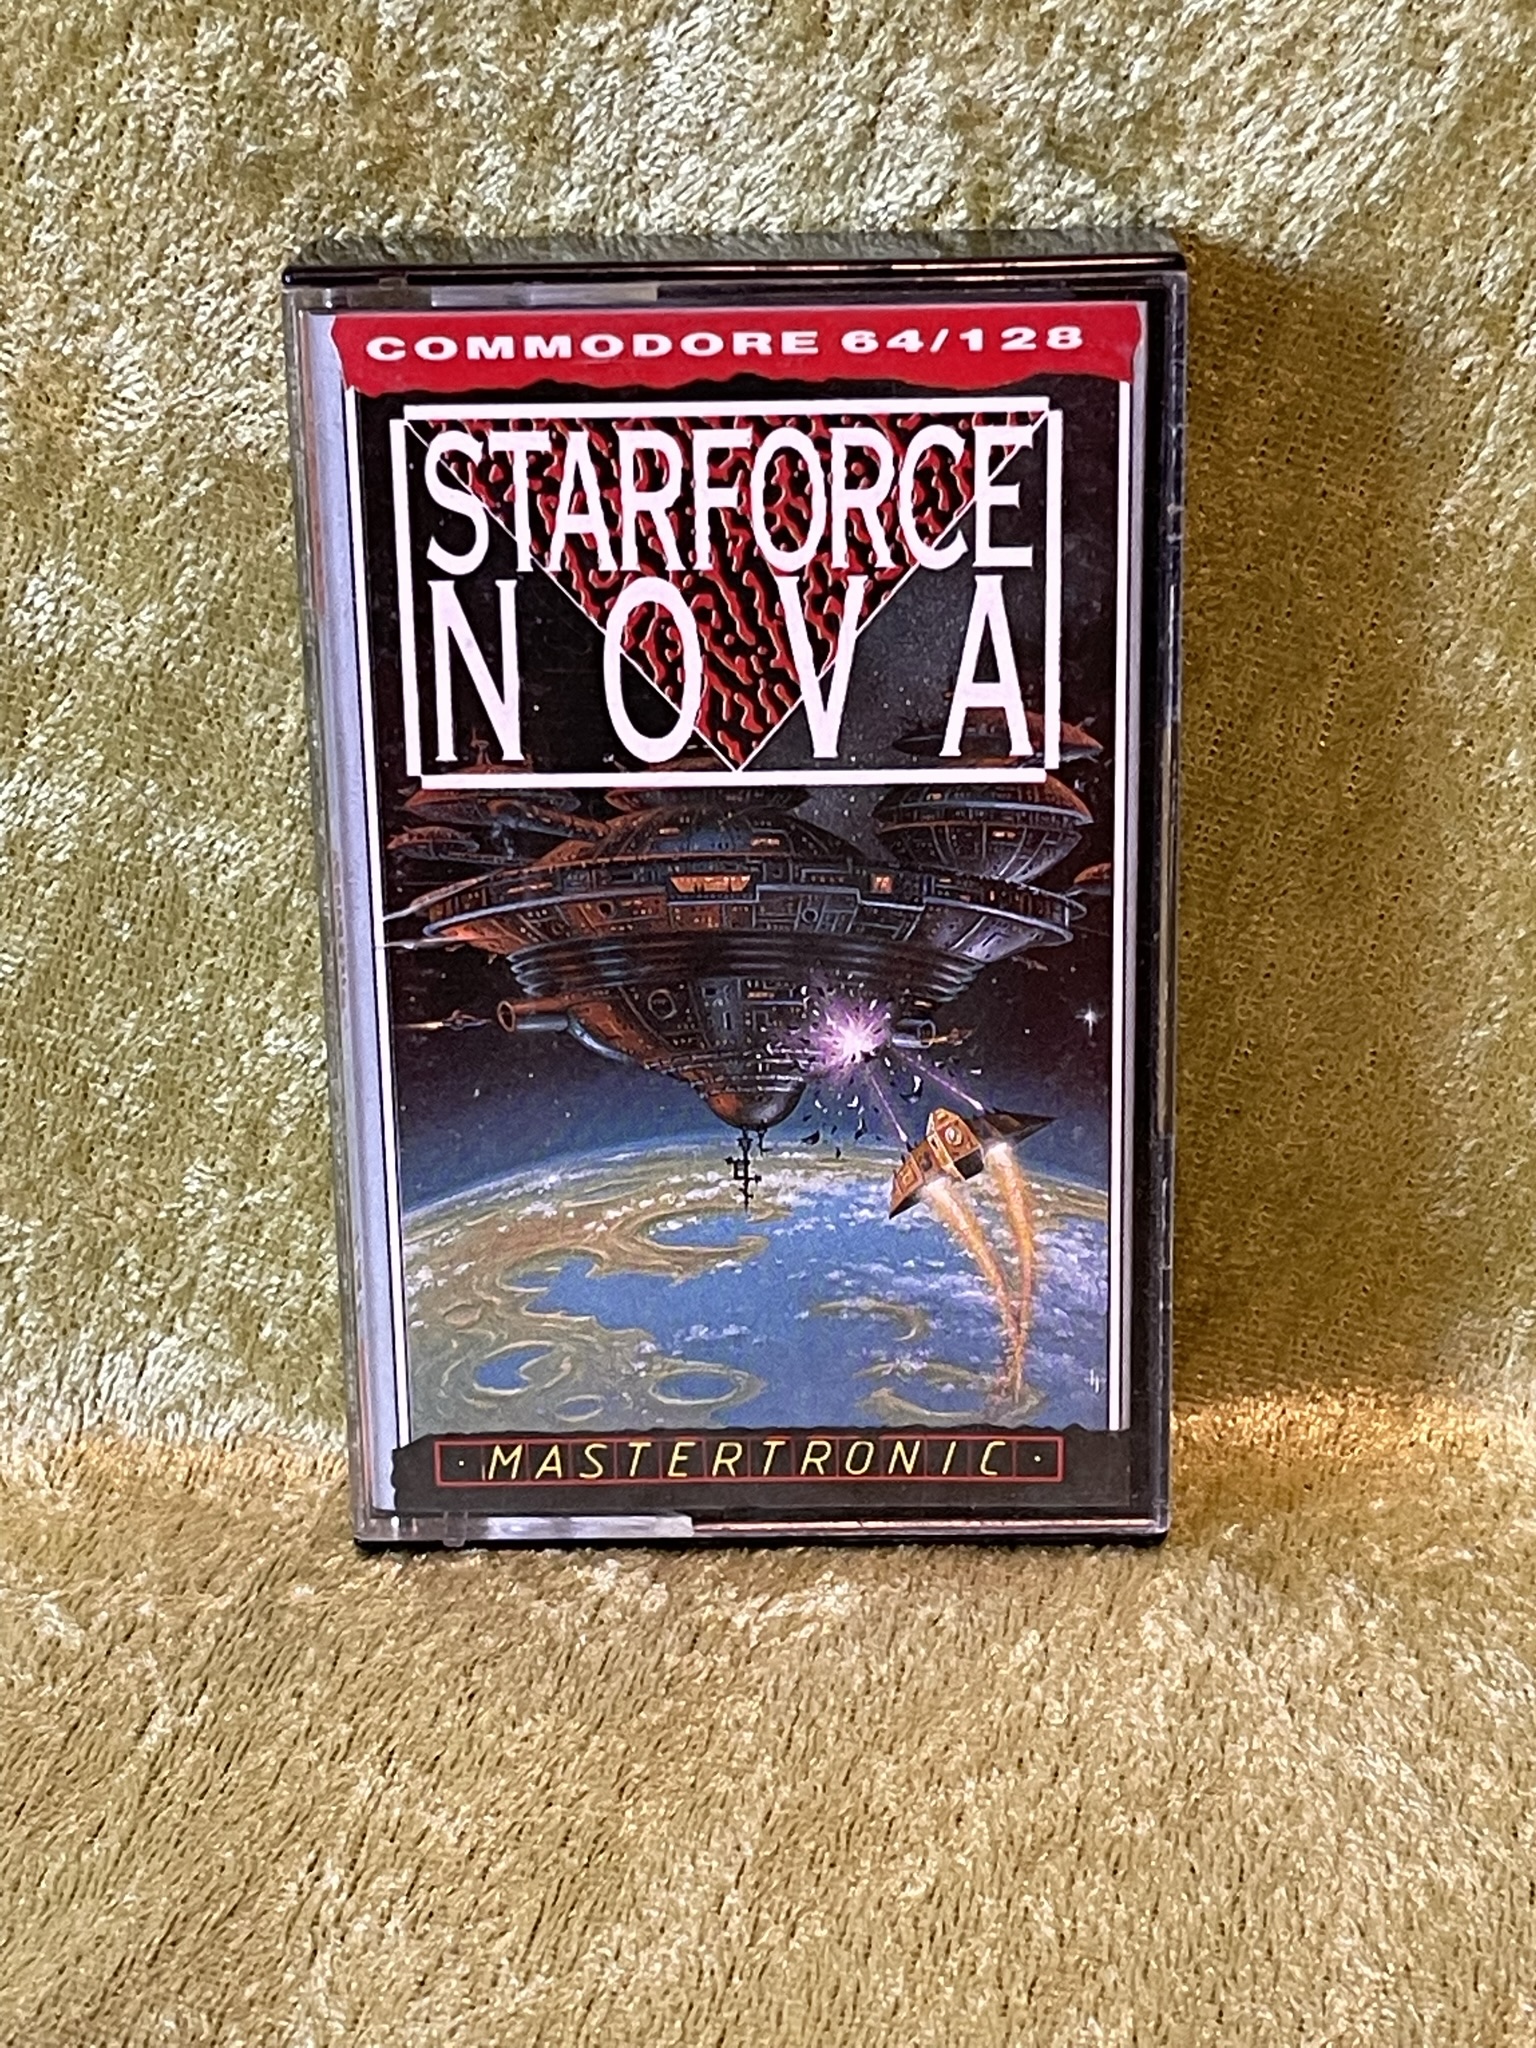 Starforce Nova